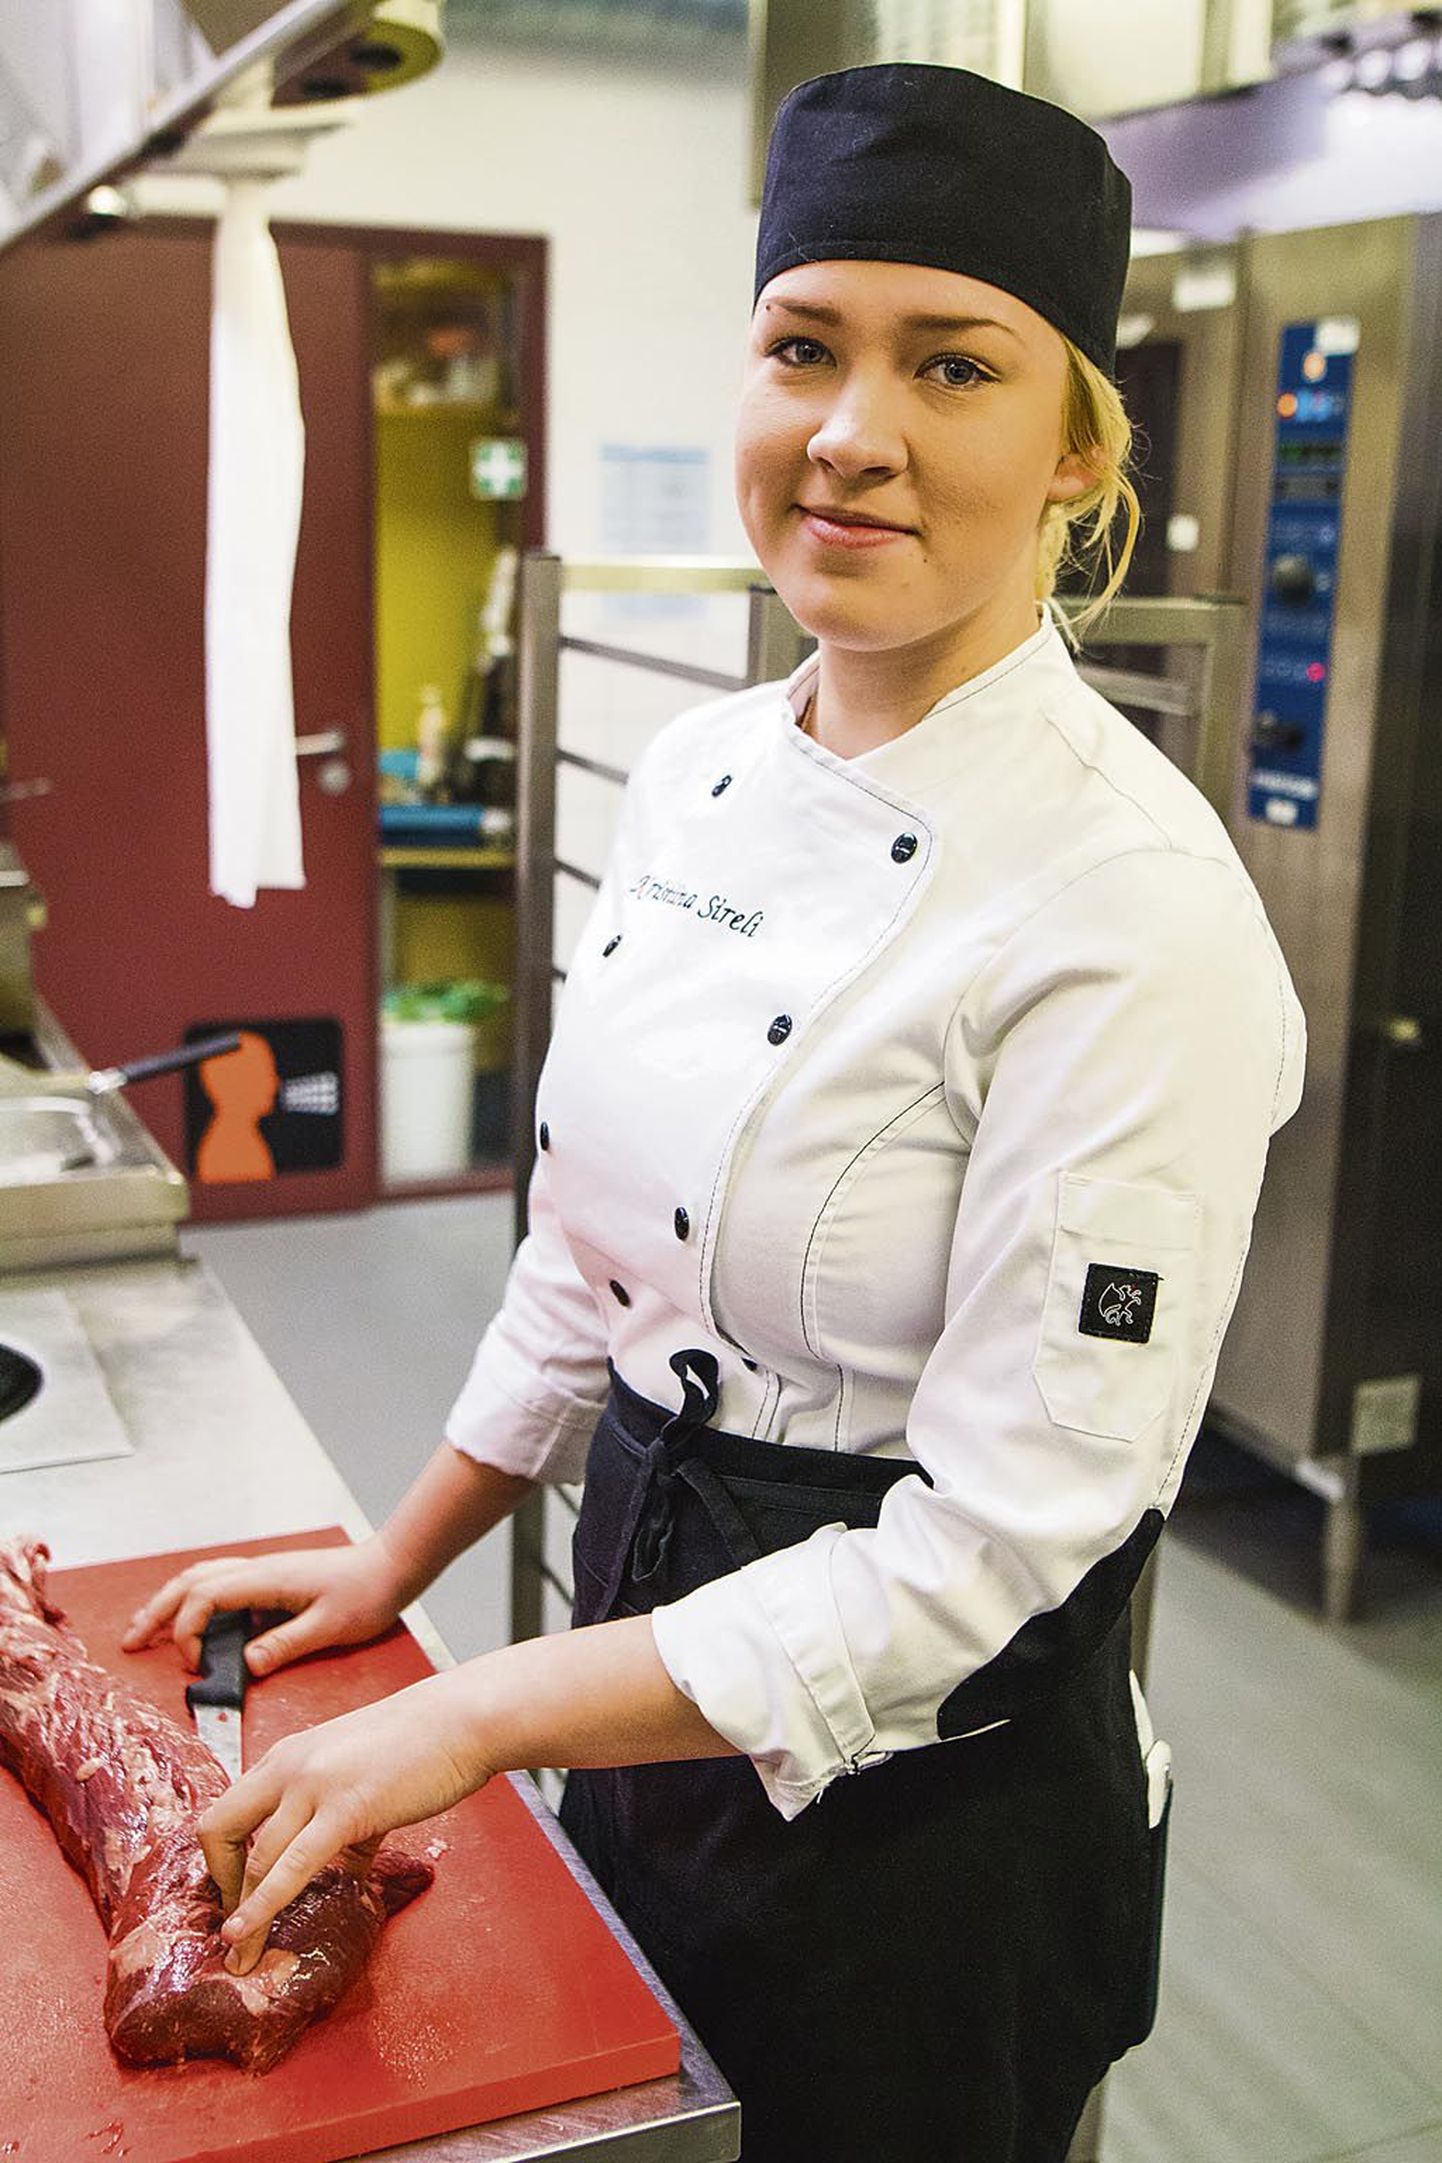 Presidendi vastuvõtu jaoks alustab Pärnumaa kutsehariduskeskuse koka eriala õpilane Kristiina Sireli ettevalmistusi uue nädala alguses. 24. veebruari ootab ta suure põnevusega.